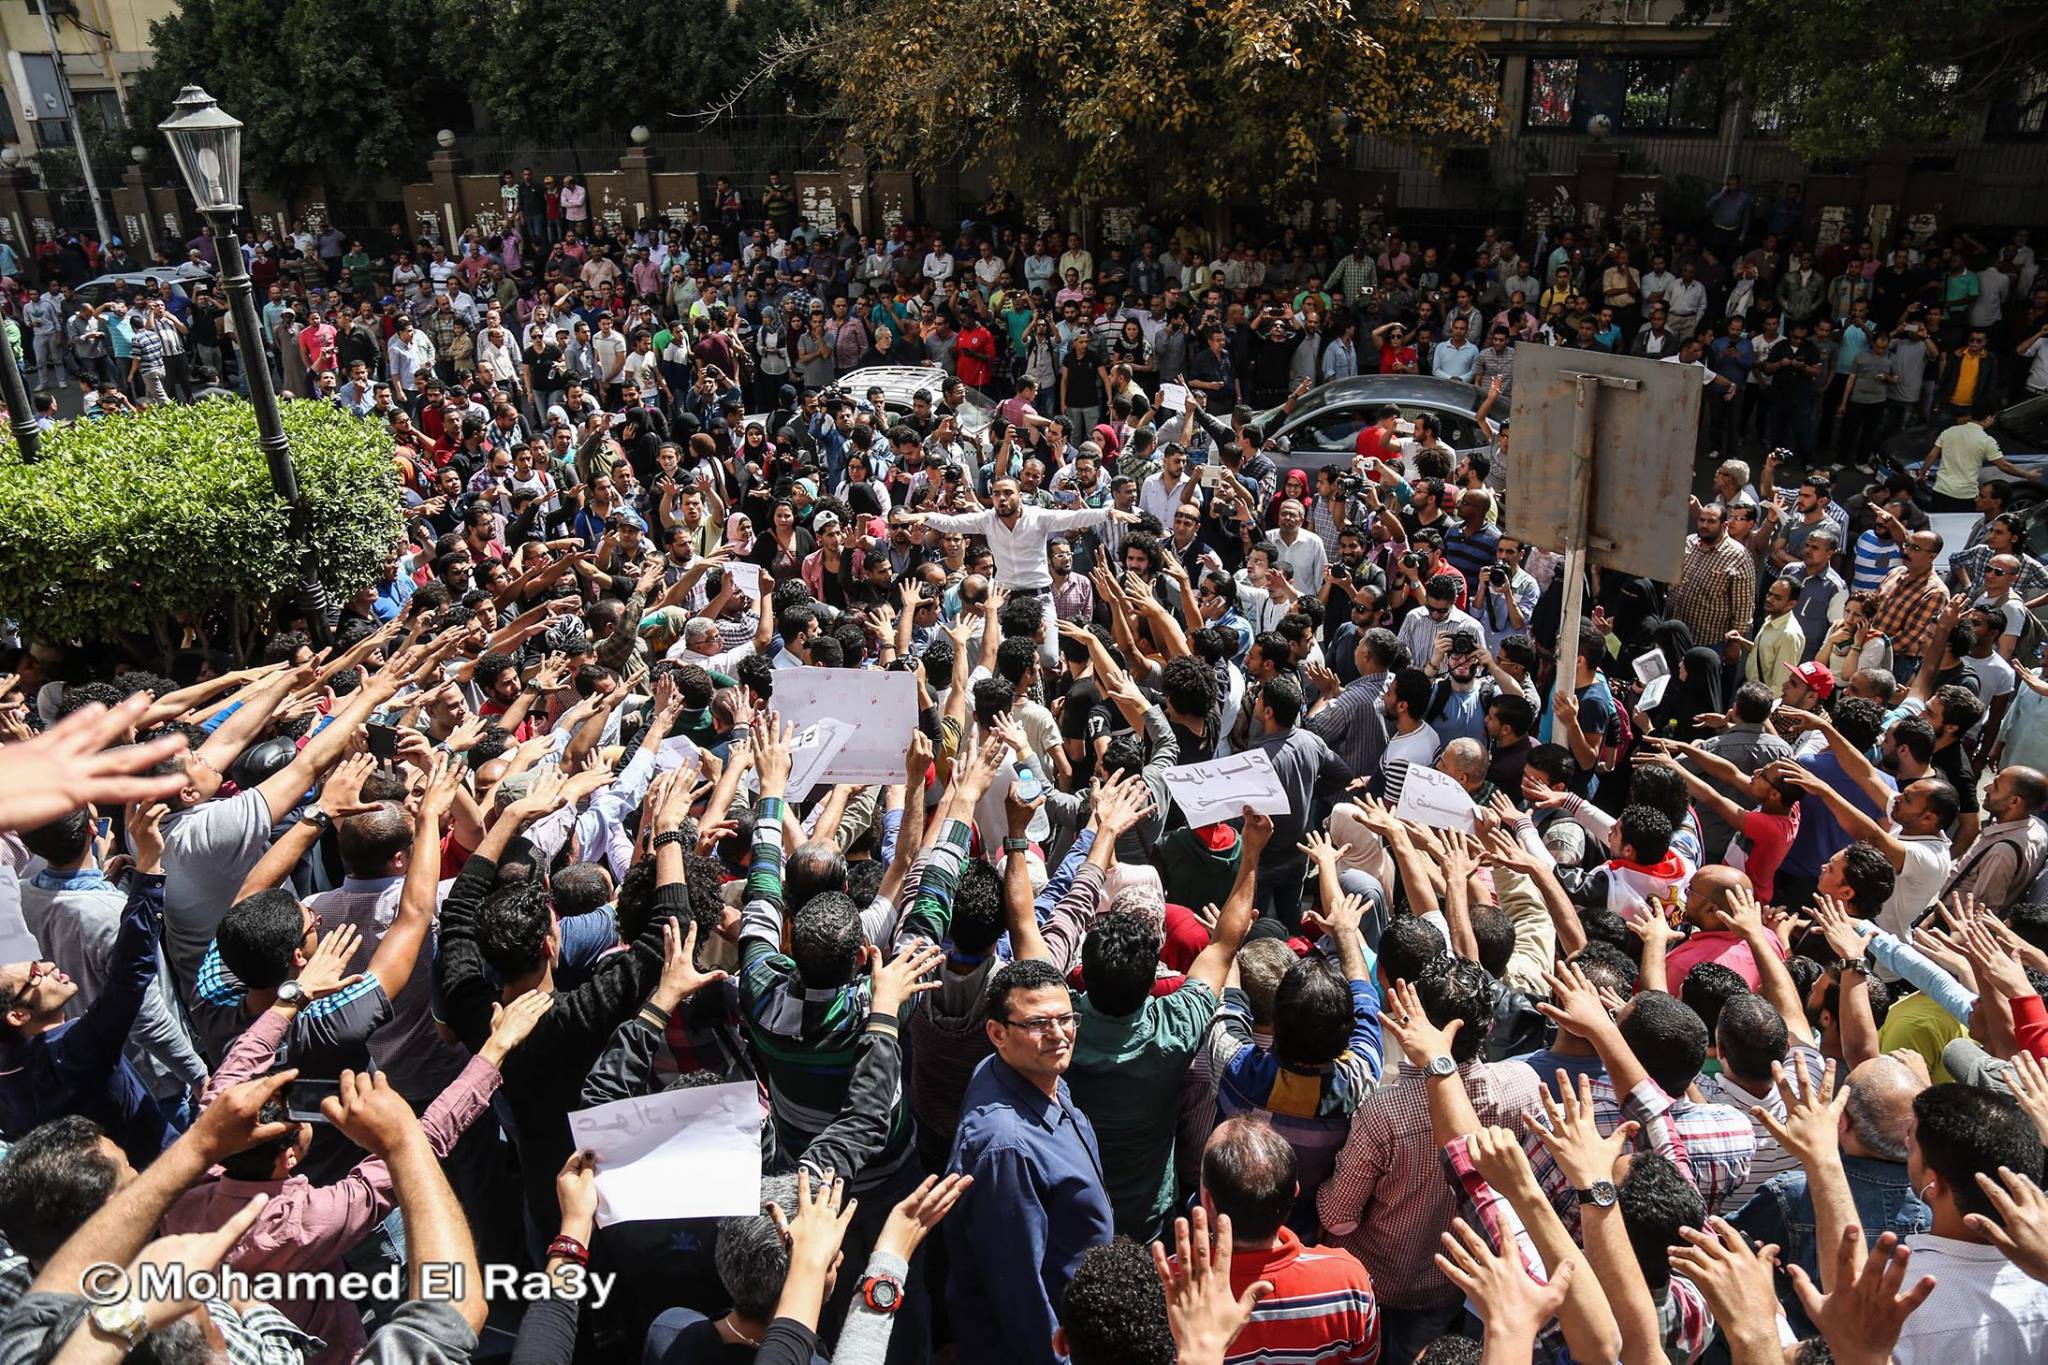 Protests on 15 April, dubbed "Land Friday". Credit: Mohamed El Ra3y